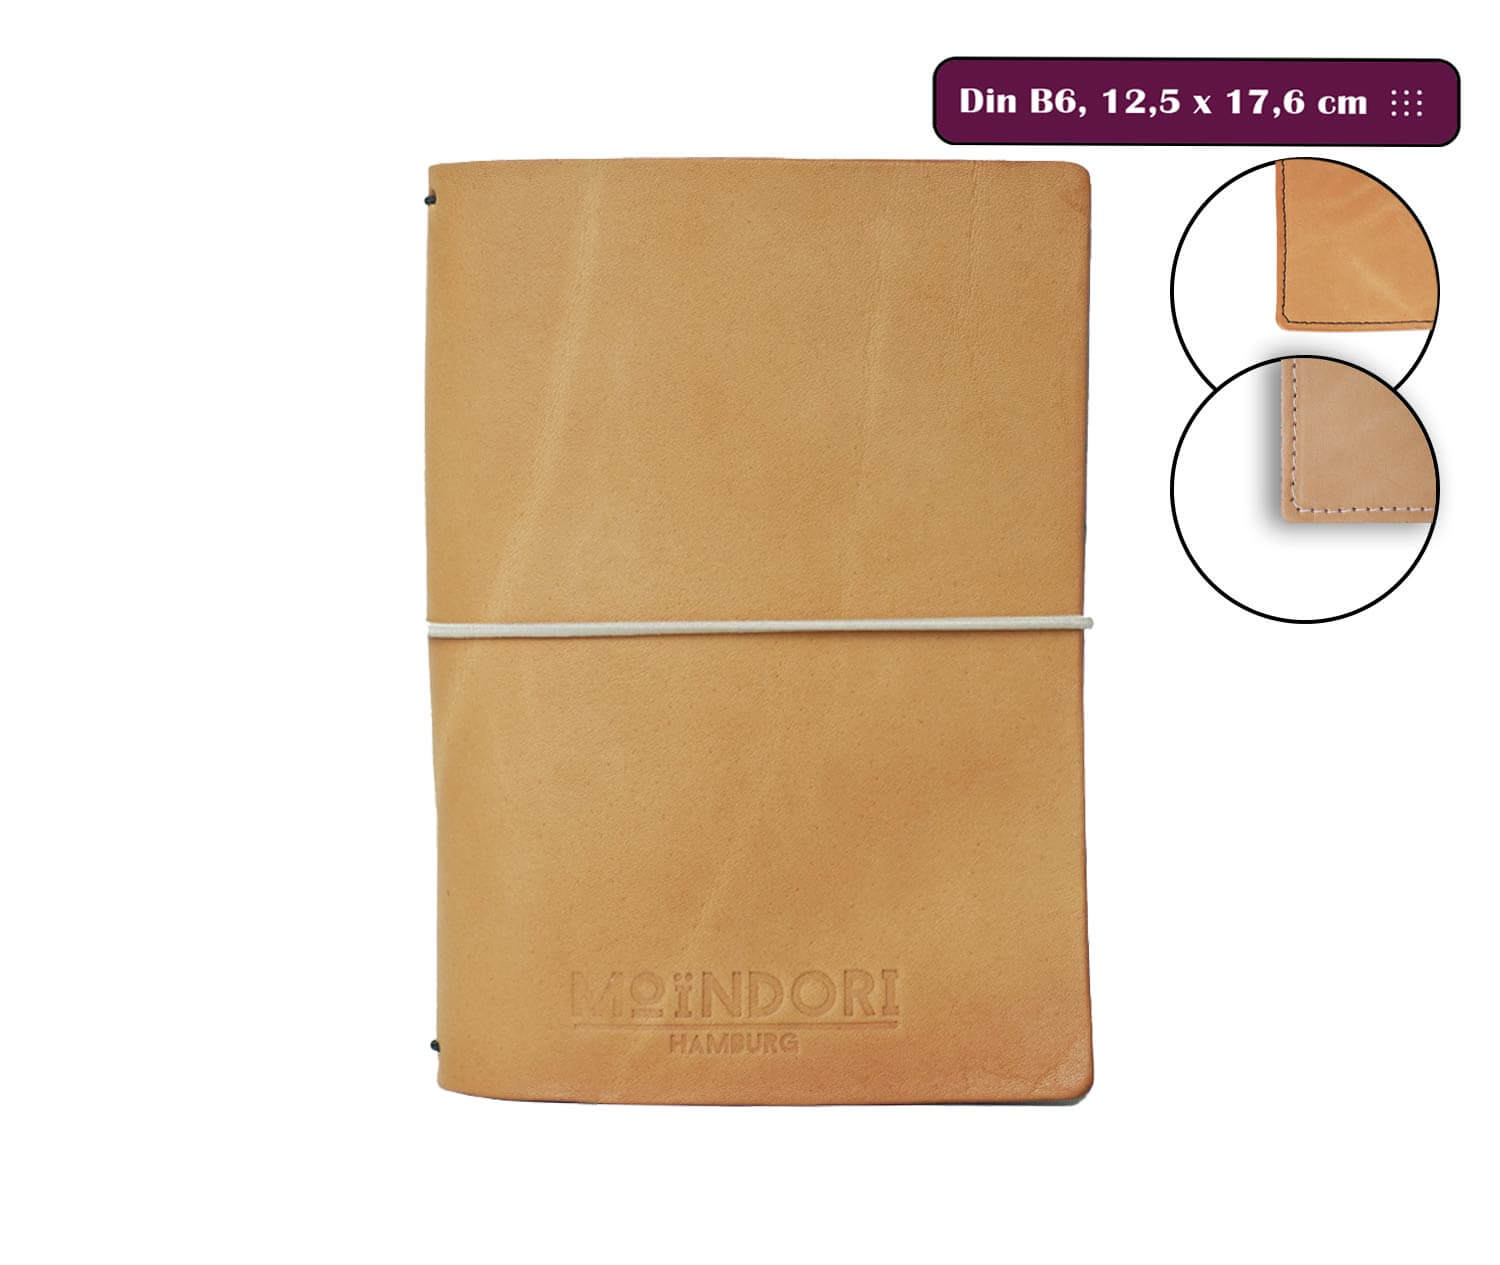 DIN B6 Travelers Notebook - inkl. 2 Heftinlets, 3,5mm Echtleder